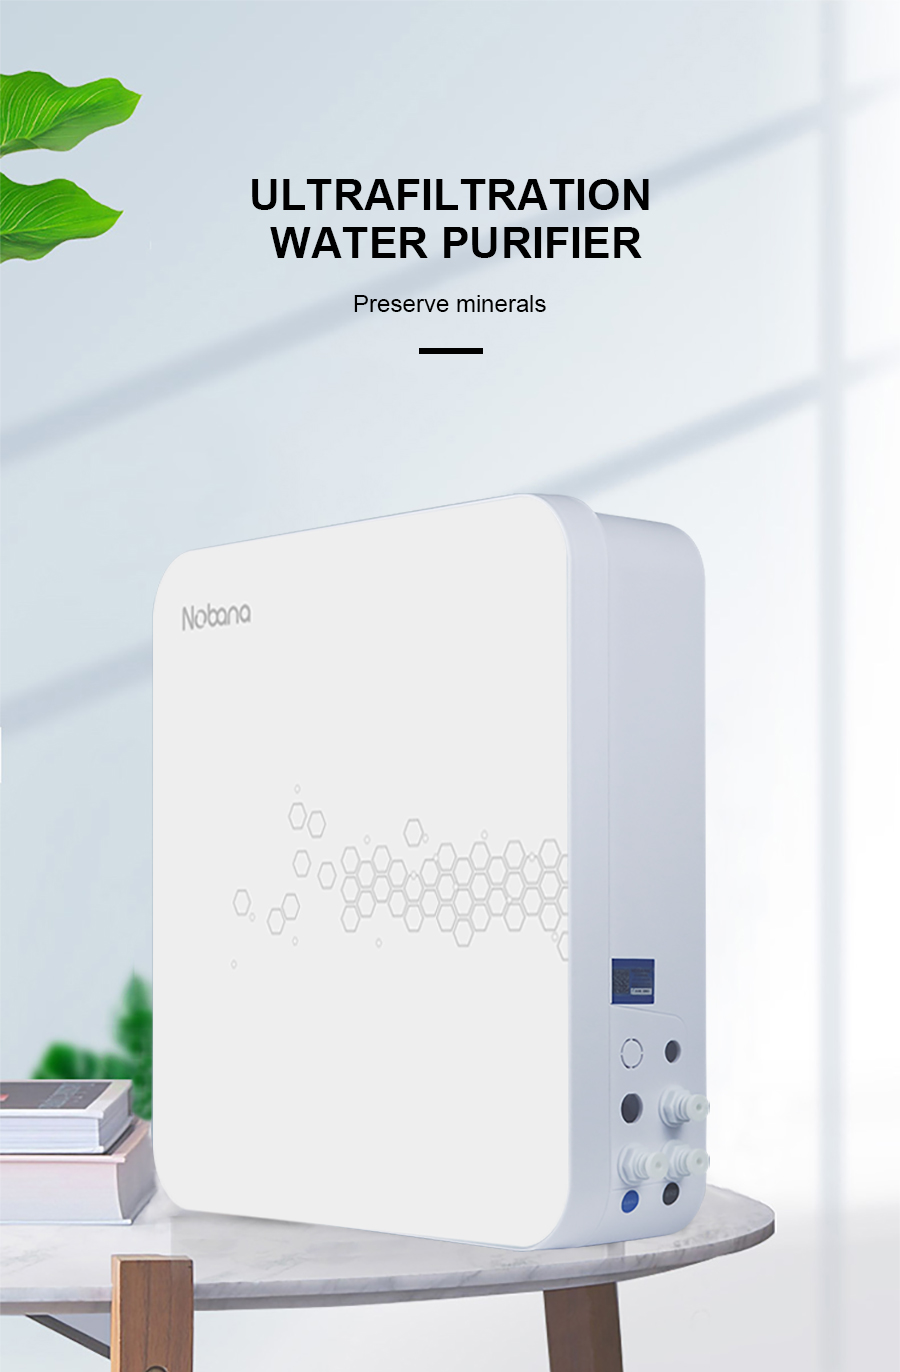 Ultrafiltration water purifier